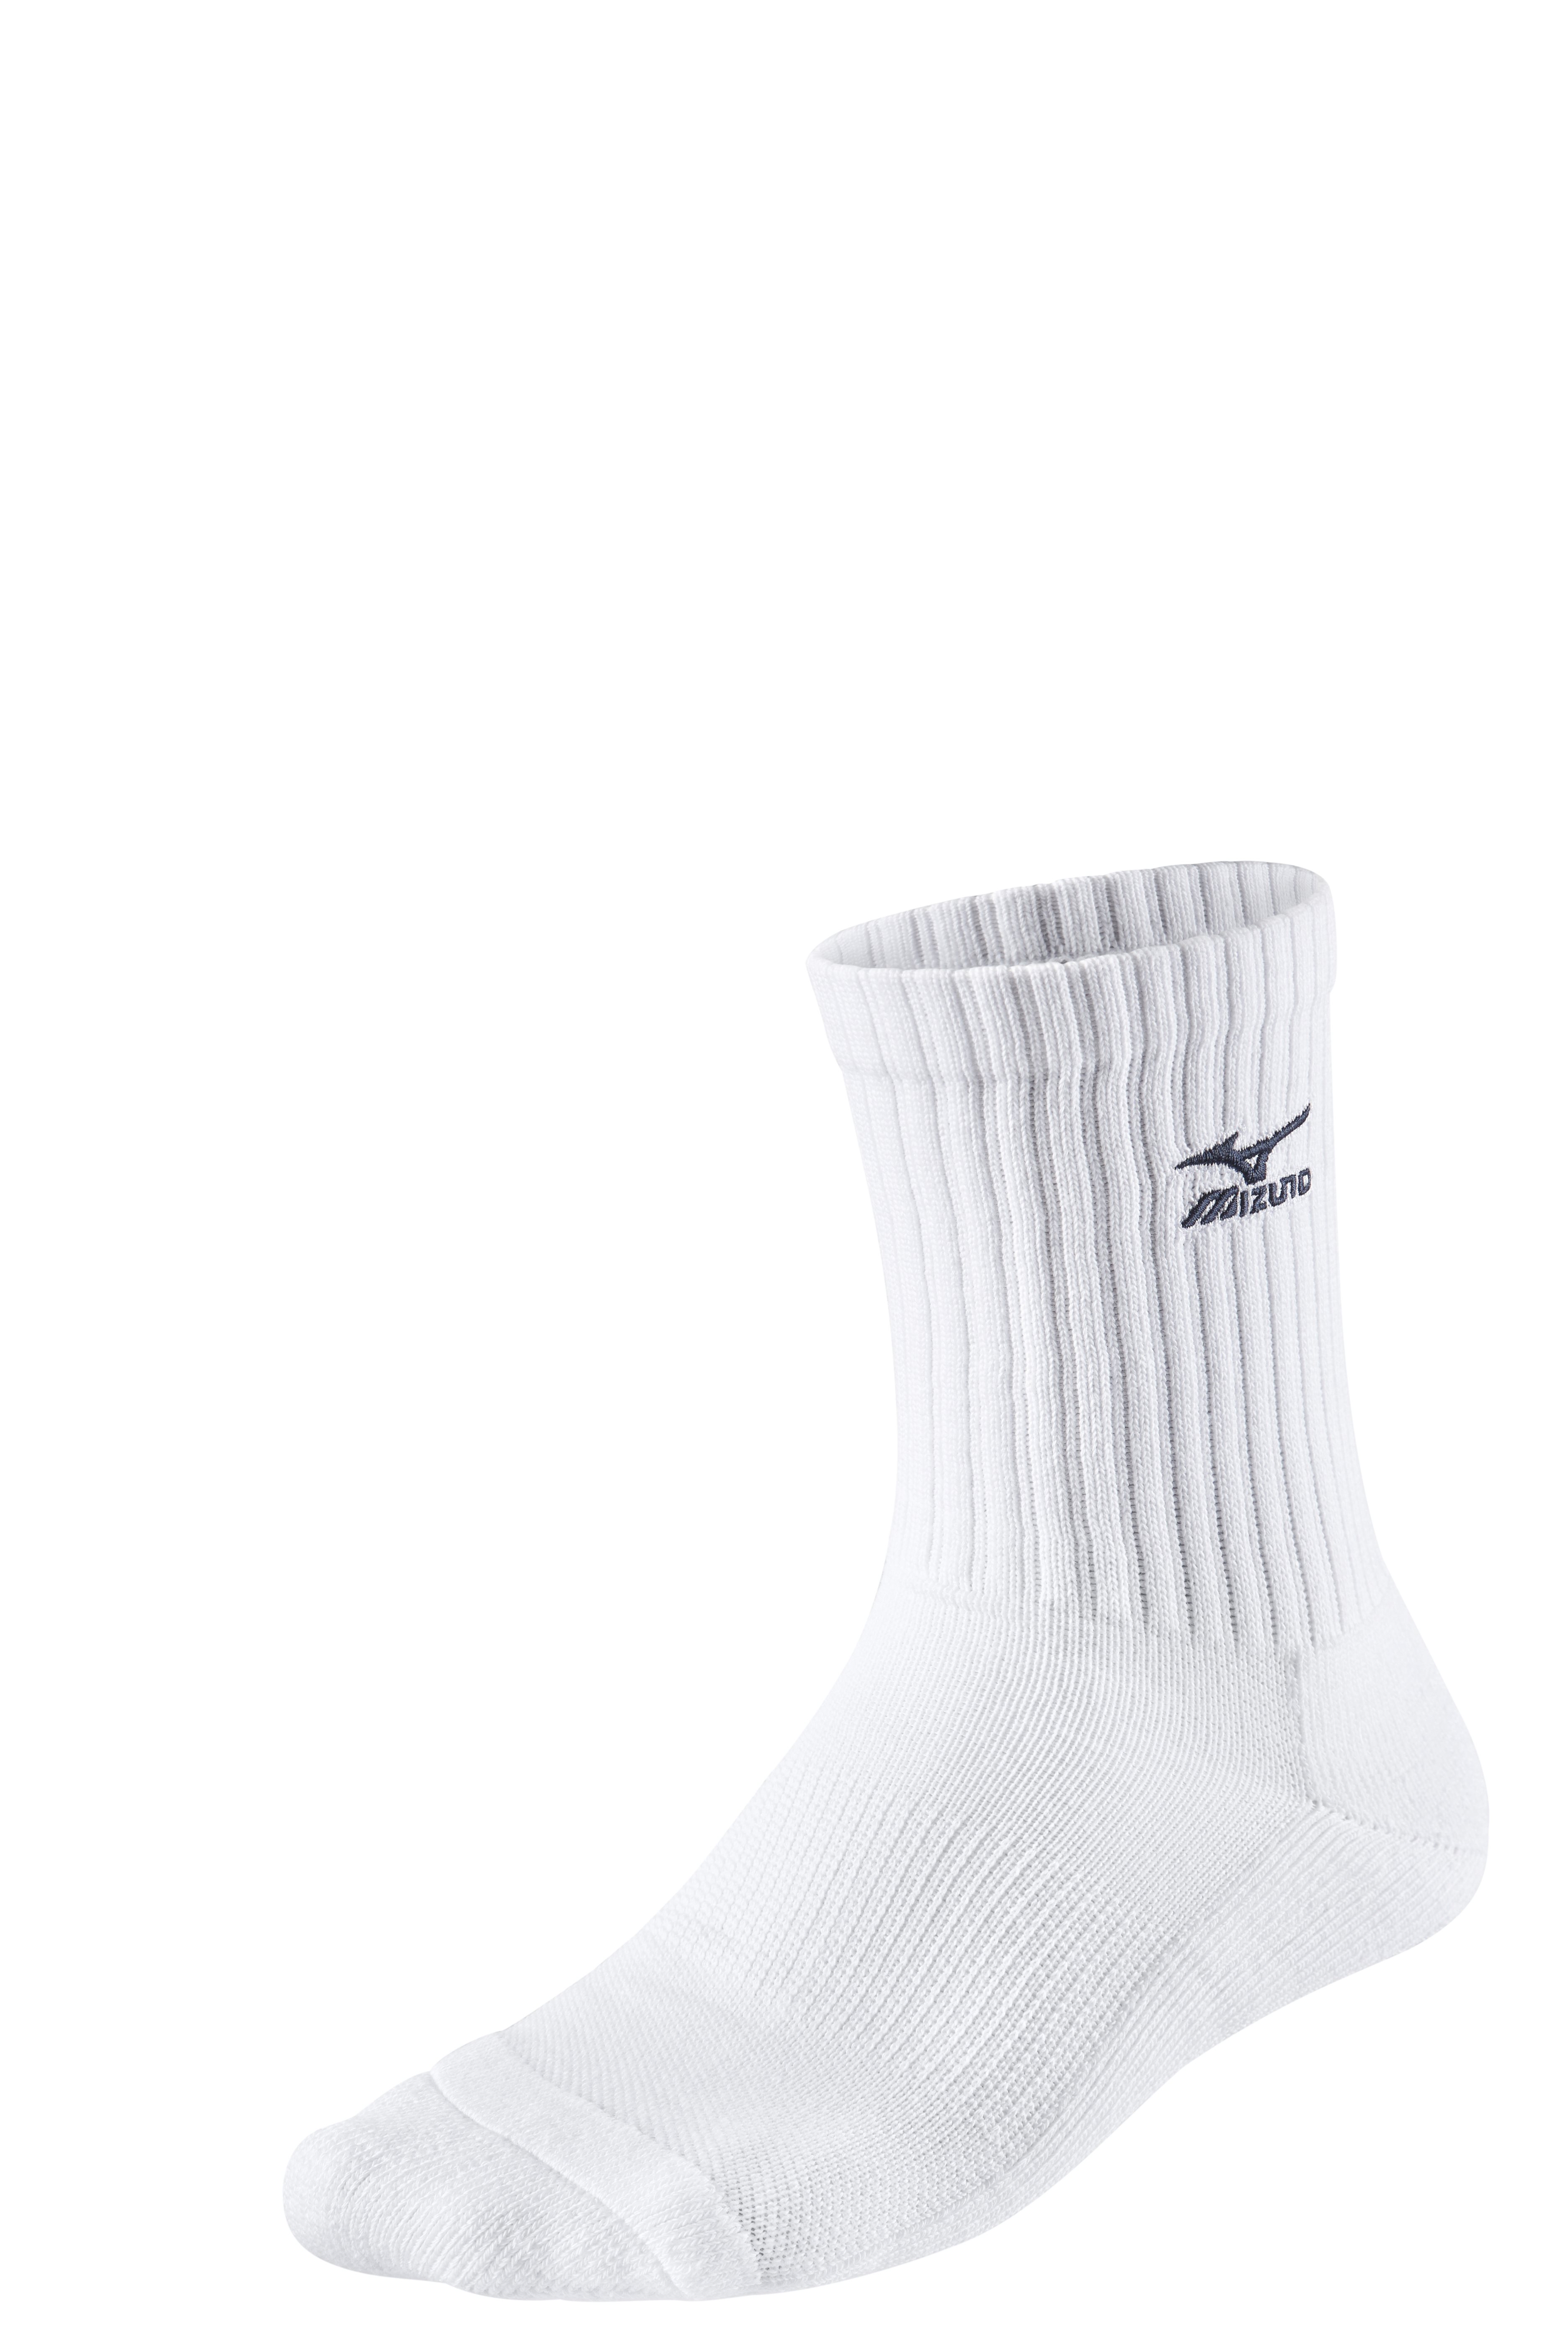 Mizuno Volley Socks Medium 67UU71571 XL